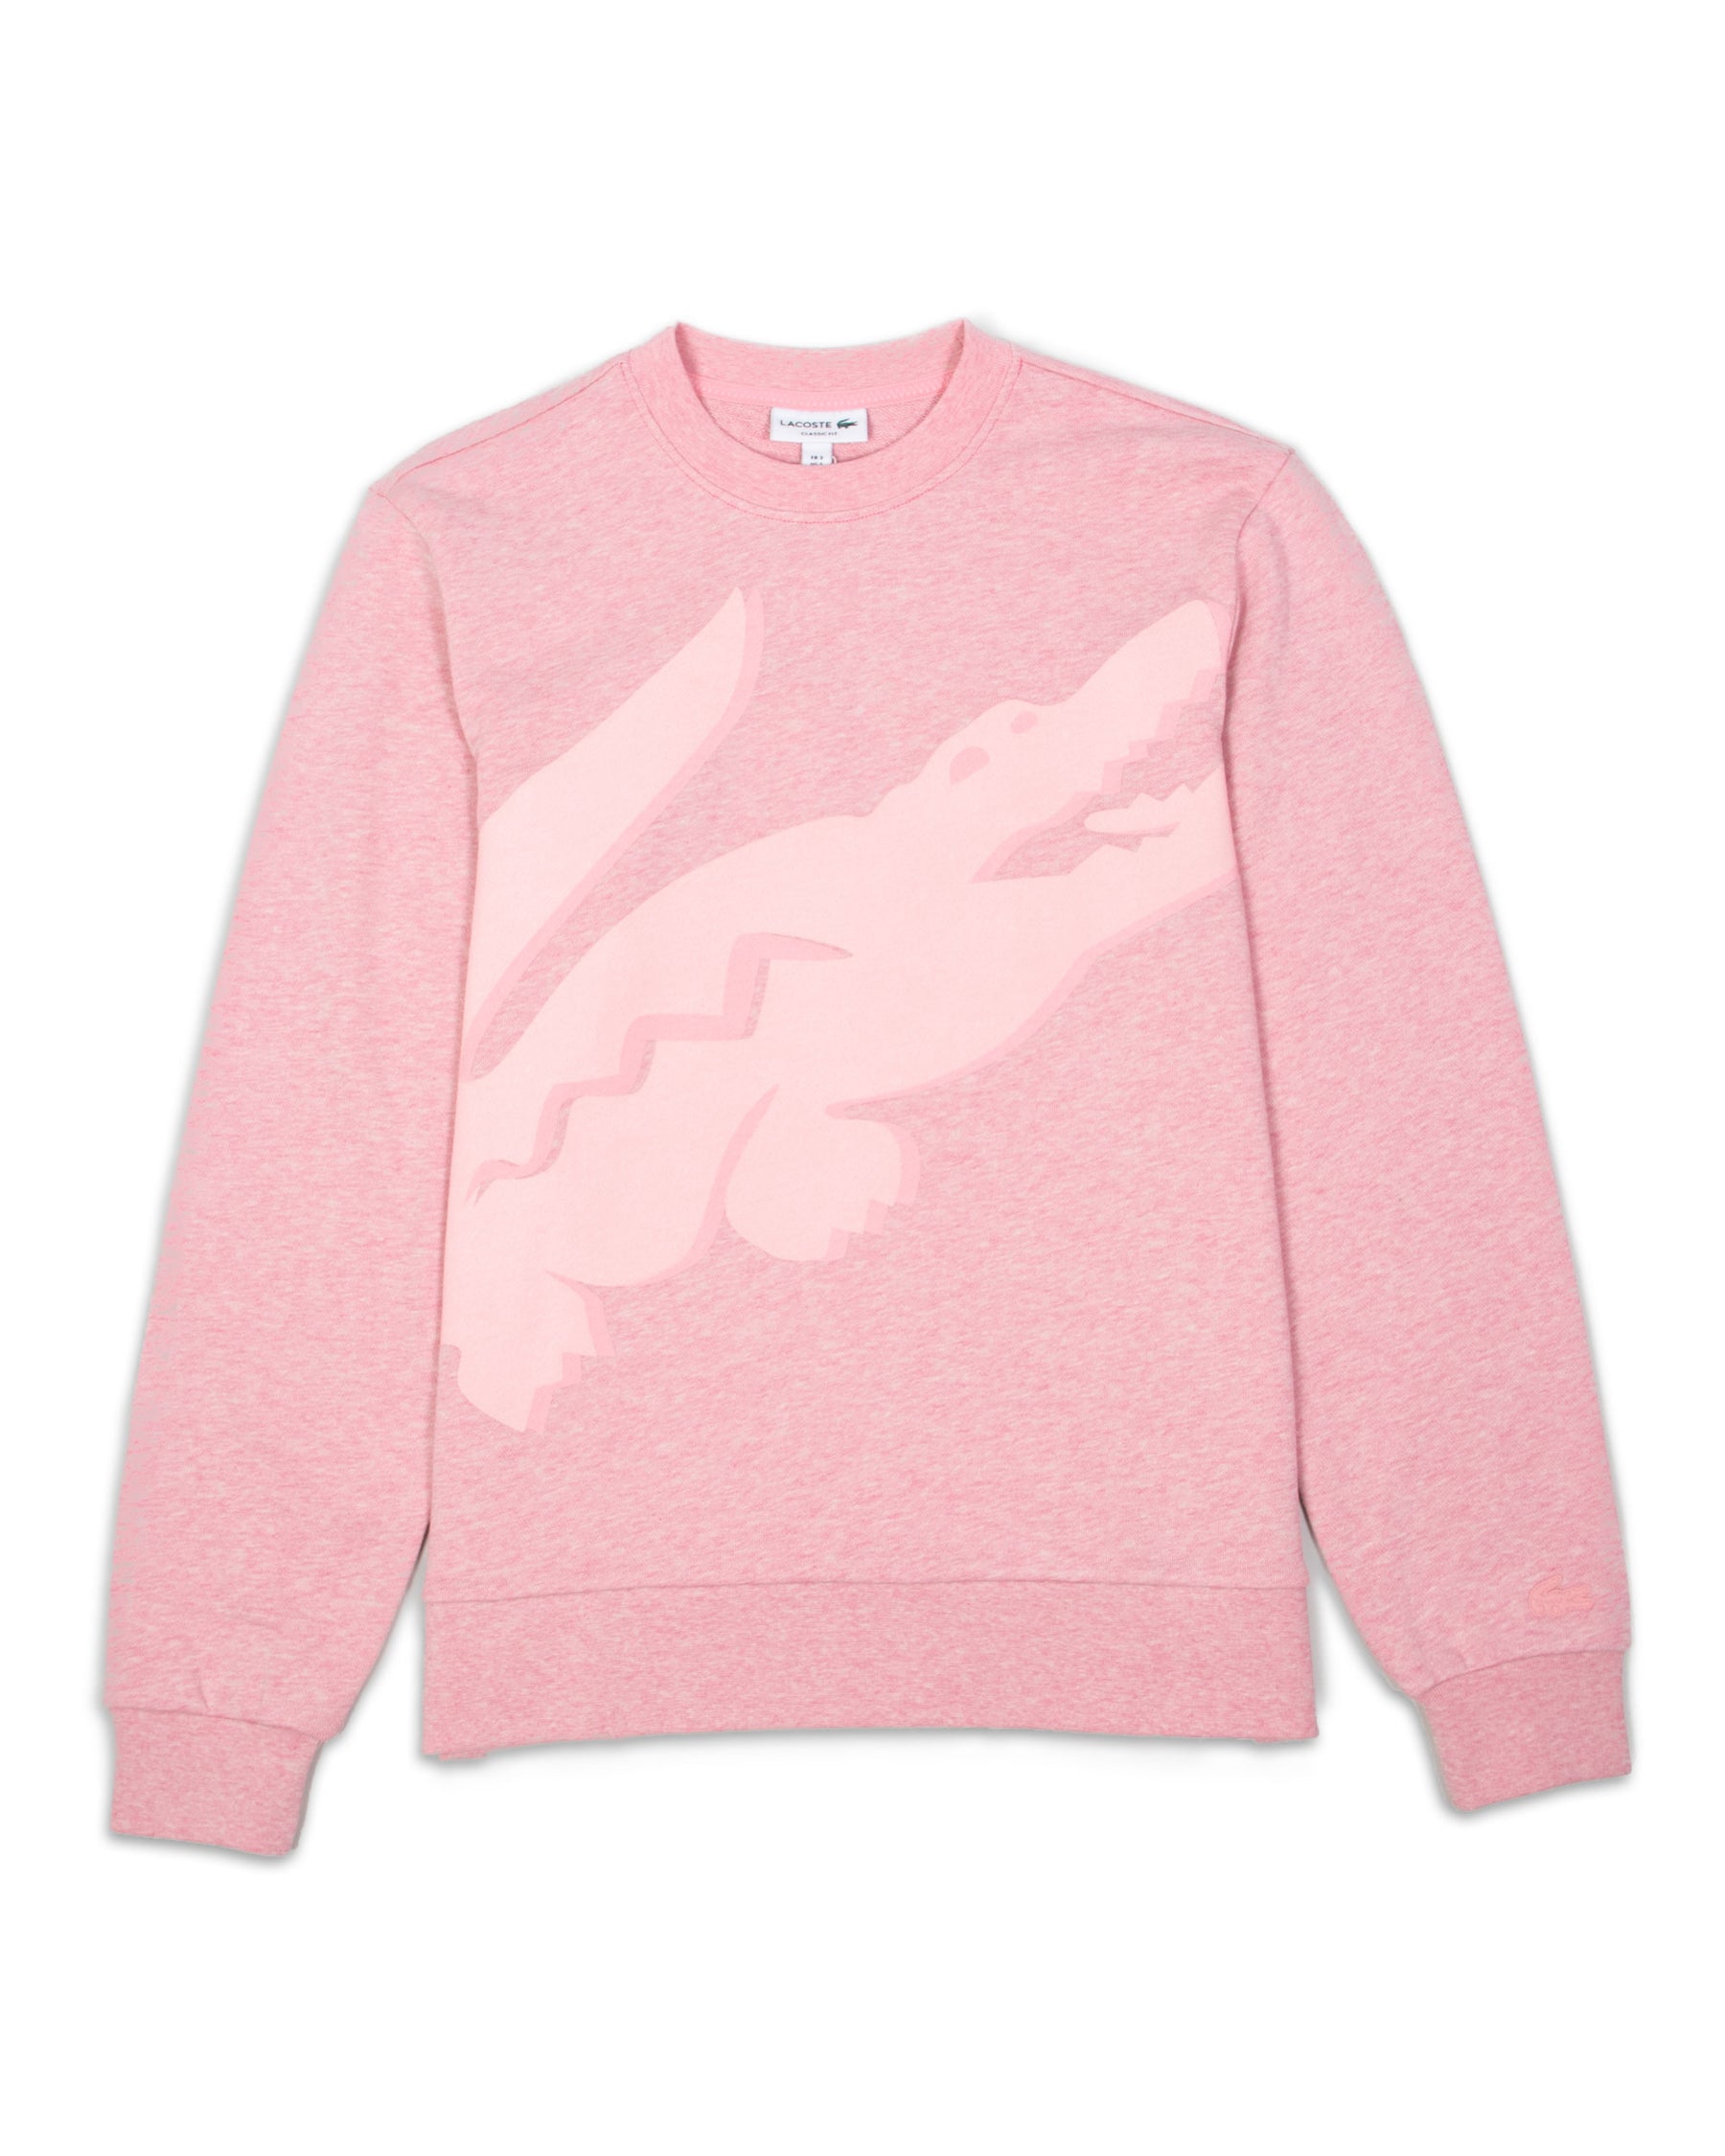 Lacoste Sweatshirt Big Logo Pink